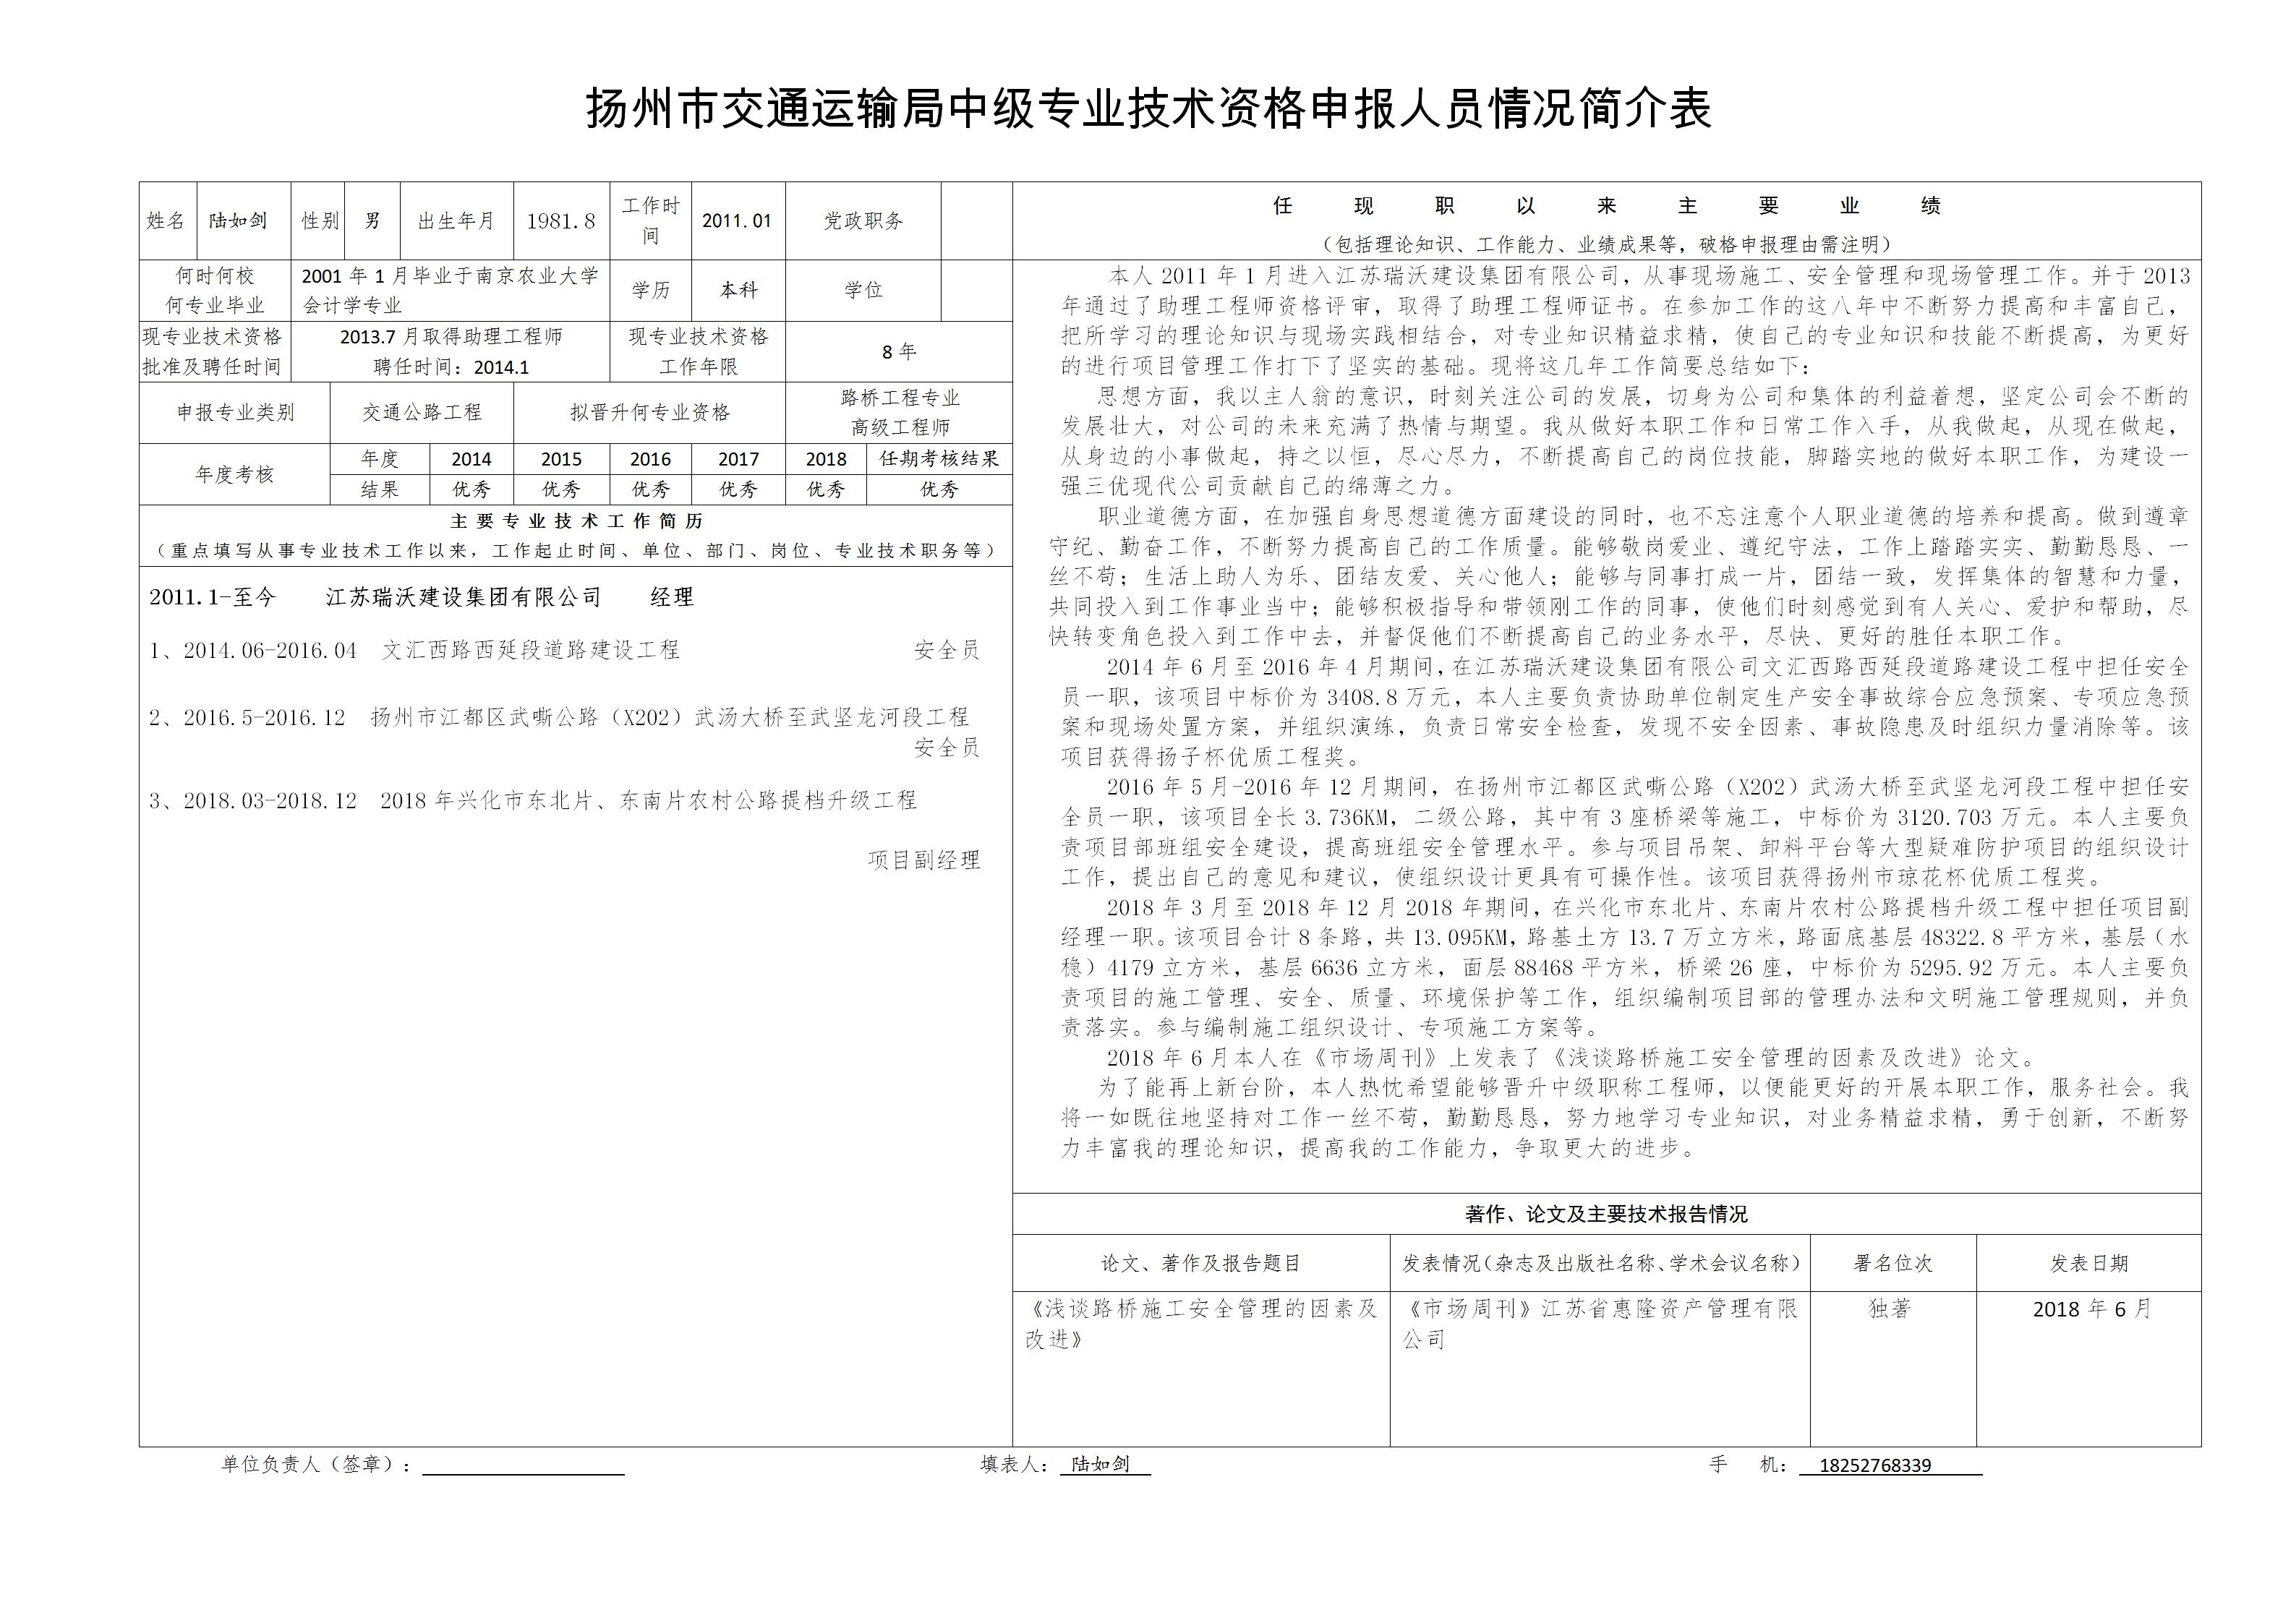 附件一：江苏省高级职称申报情况简介表-陆如剑_01.jpg